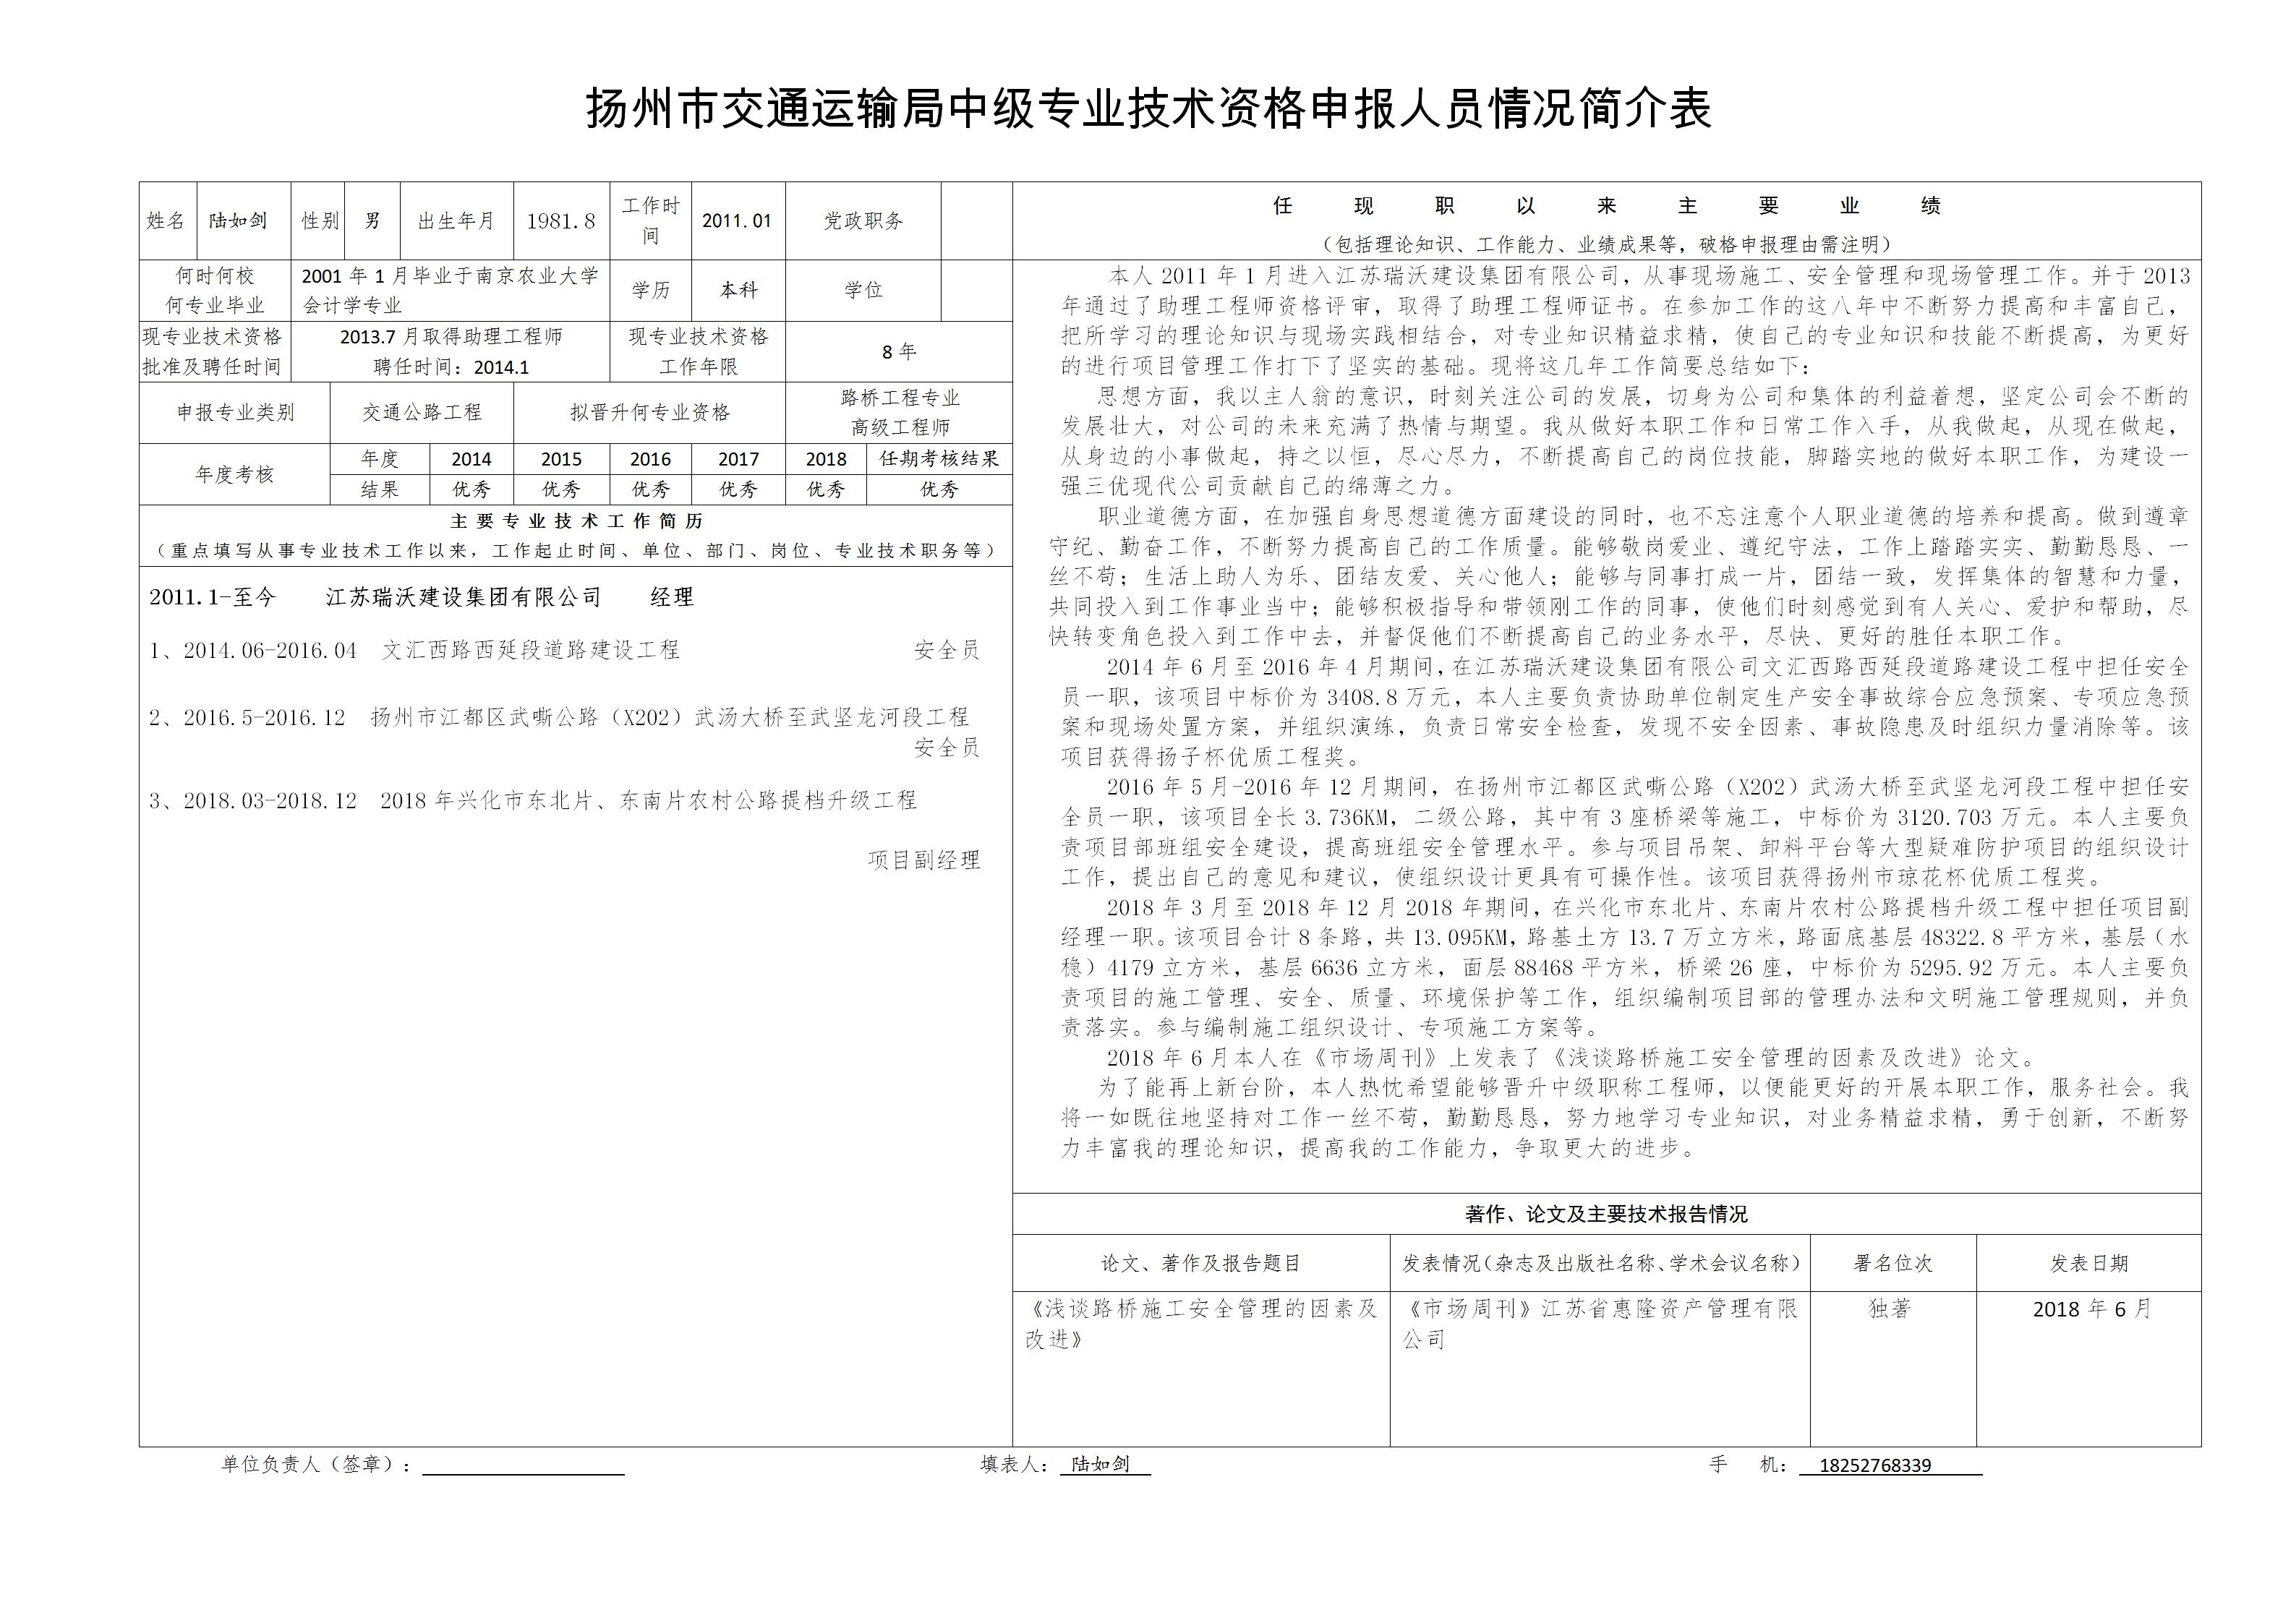 附件一：江苏省高级职称申报情况简介表-陆如剑_01.jpg